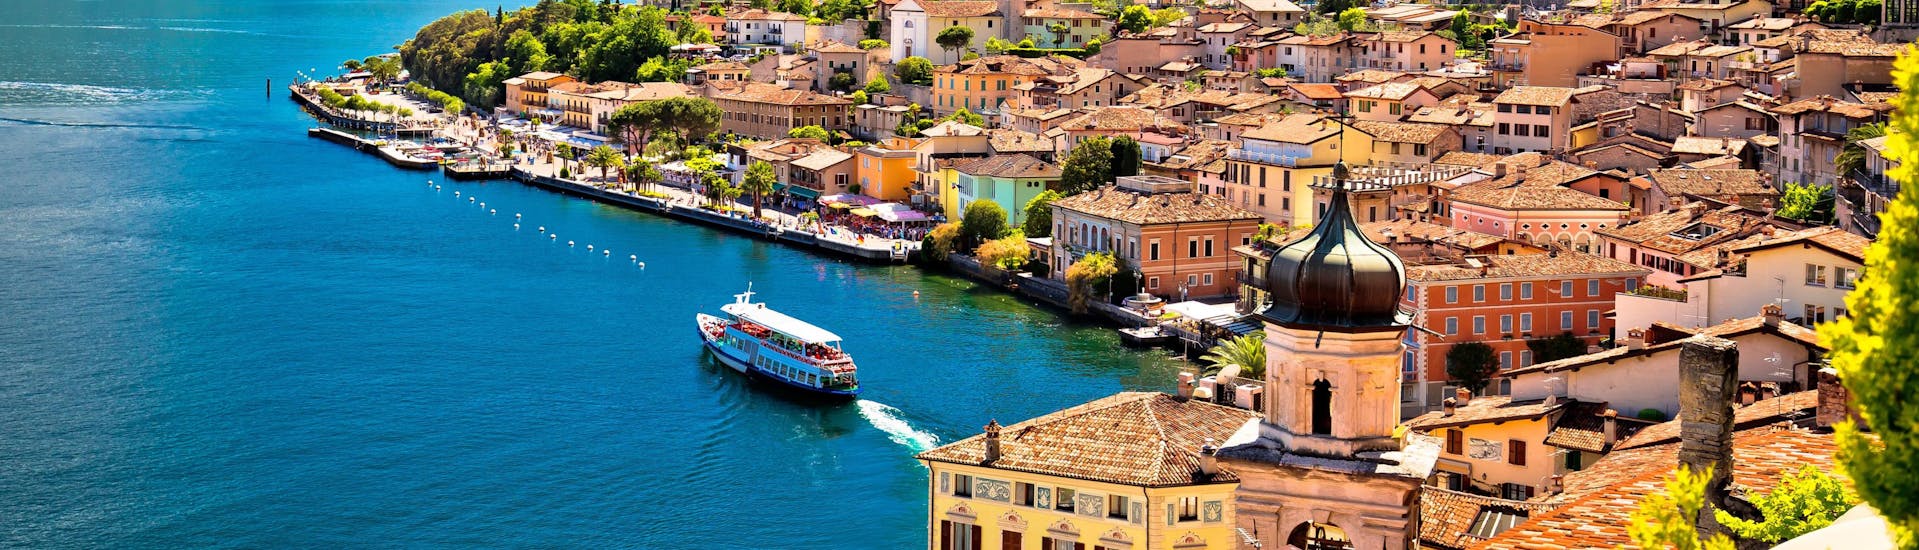 Die Stadt Limone sul Garda am Gardasee in Italien.